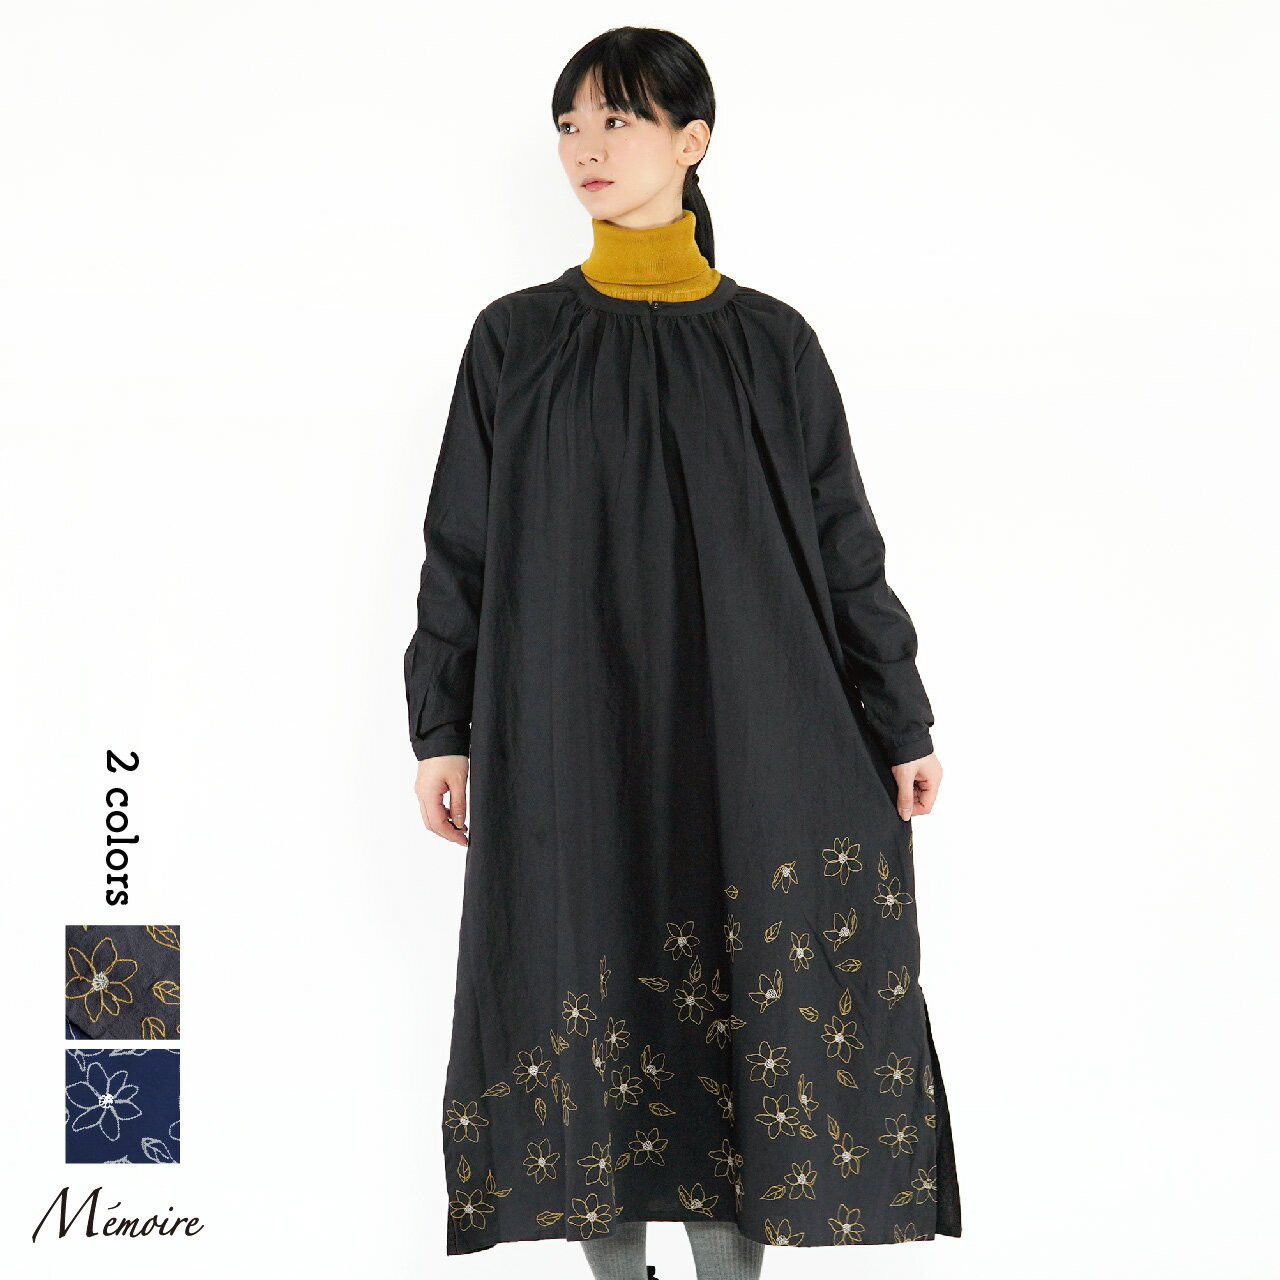 Memoire(メモワール)の公式通販／ナチュラル服の nodoka -のどか-